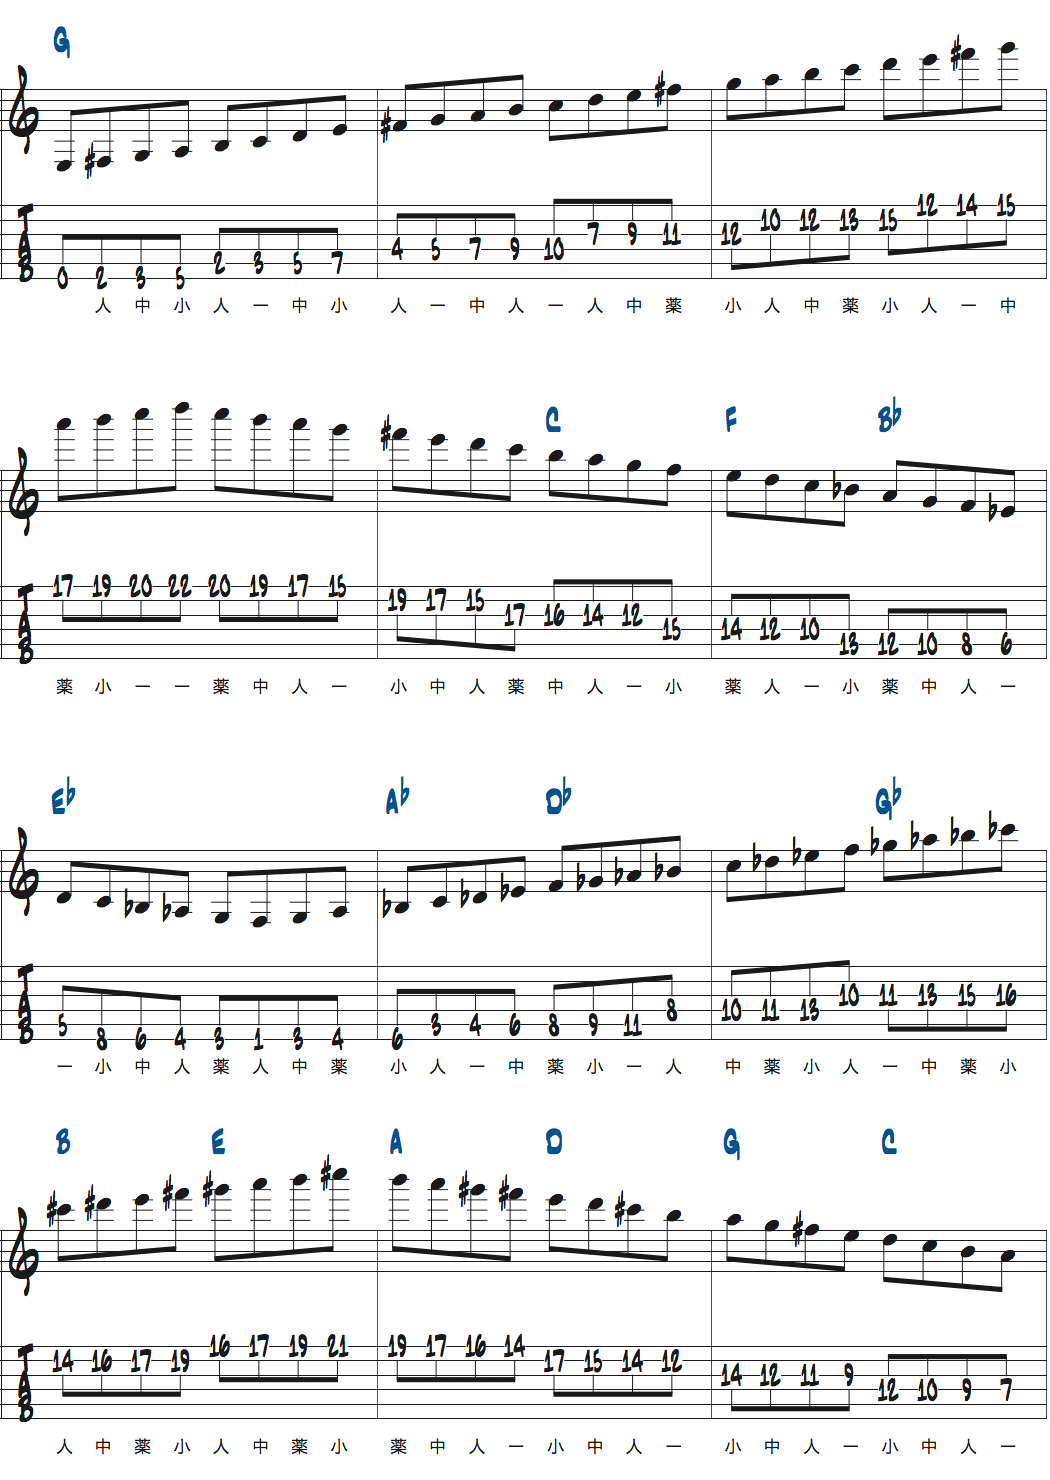 カートローゼンウィンケルのスケールウォーミングアップ速度上げた例楽譜ページ1